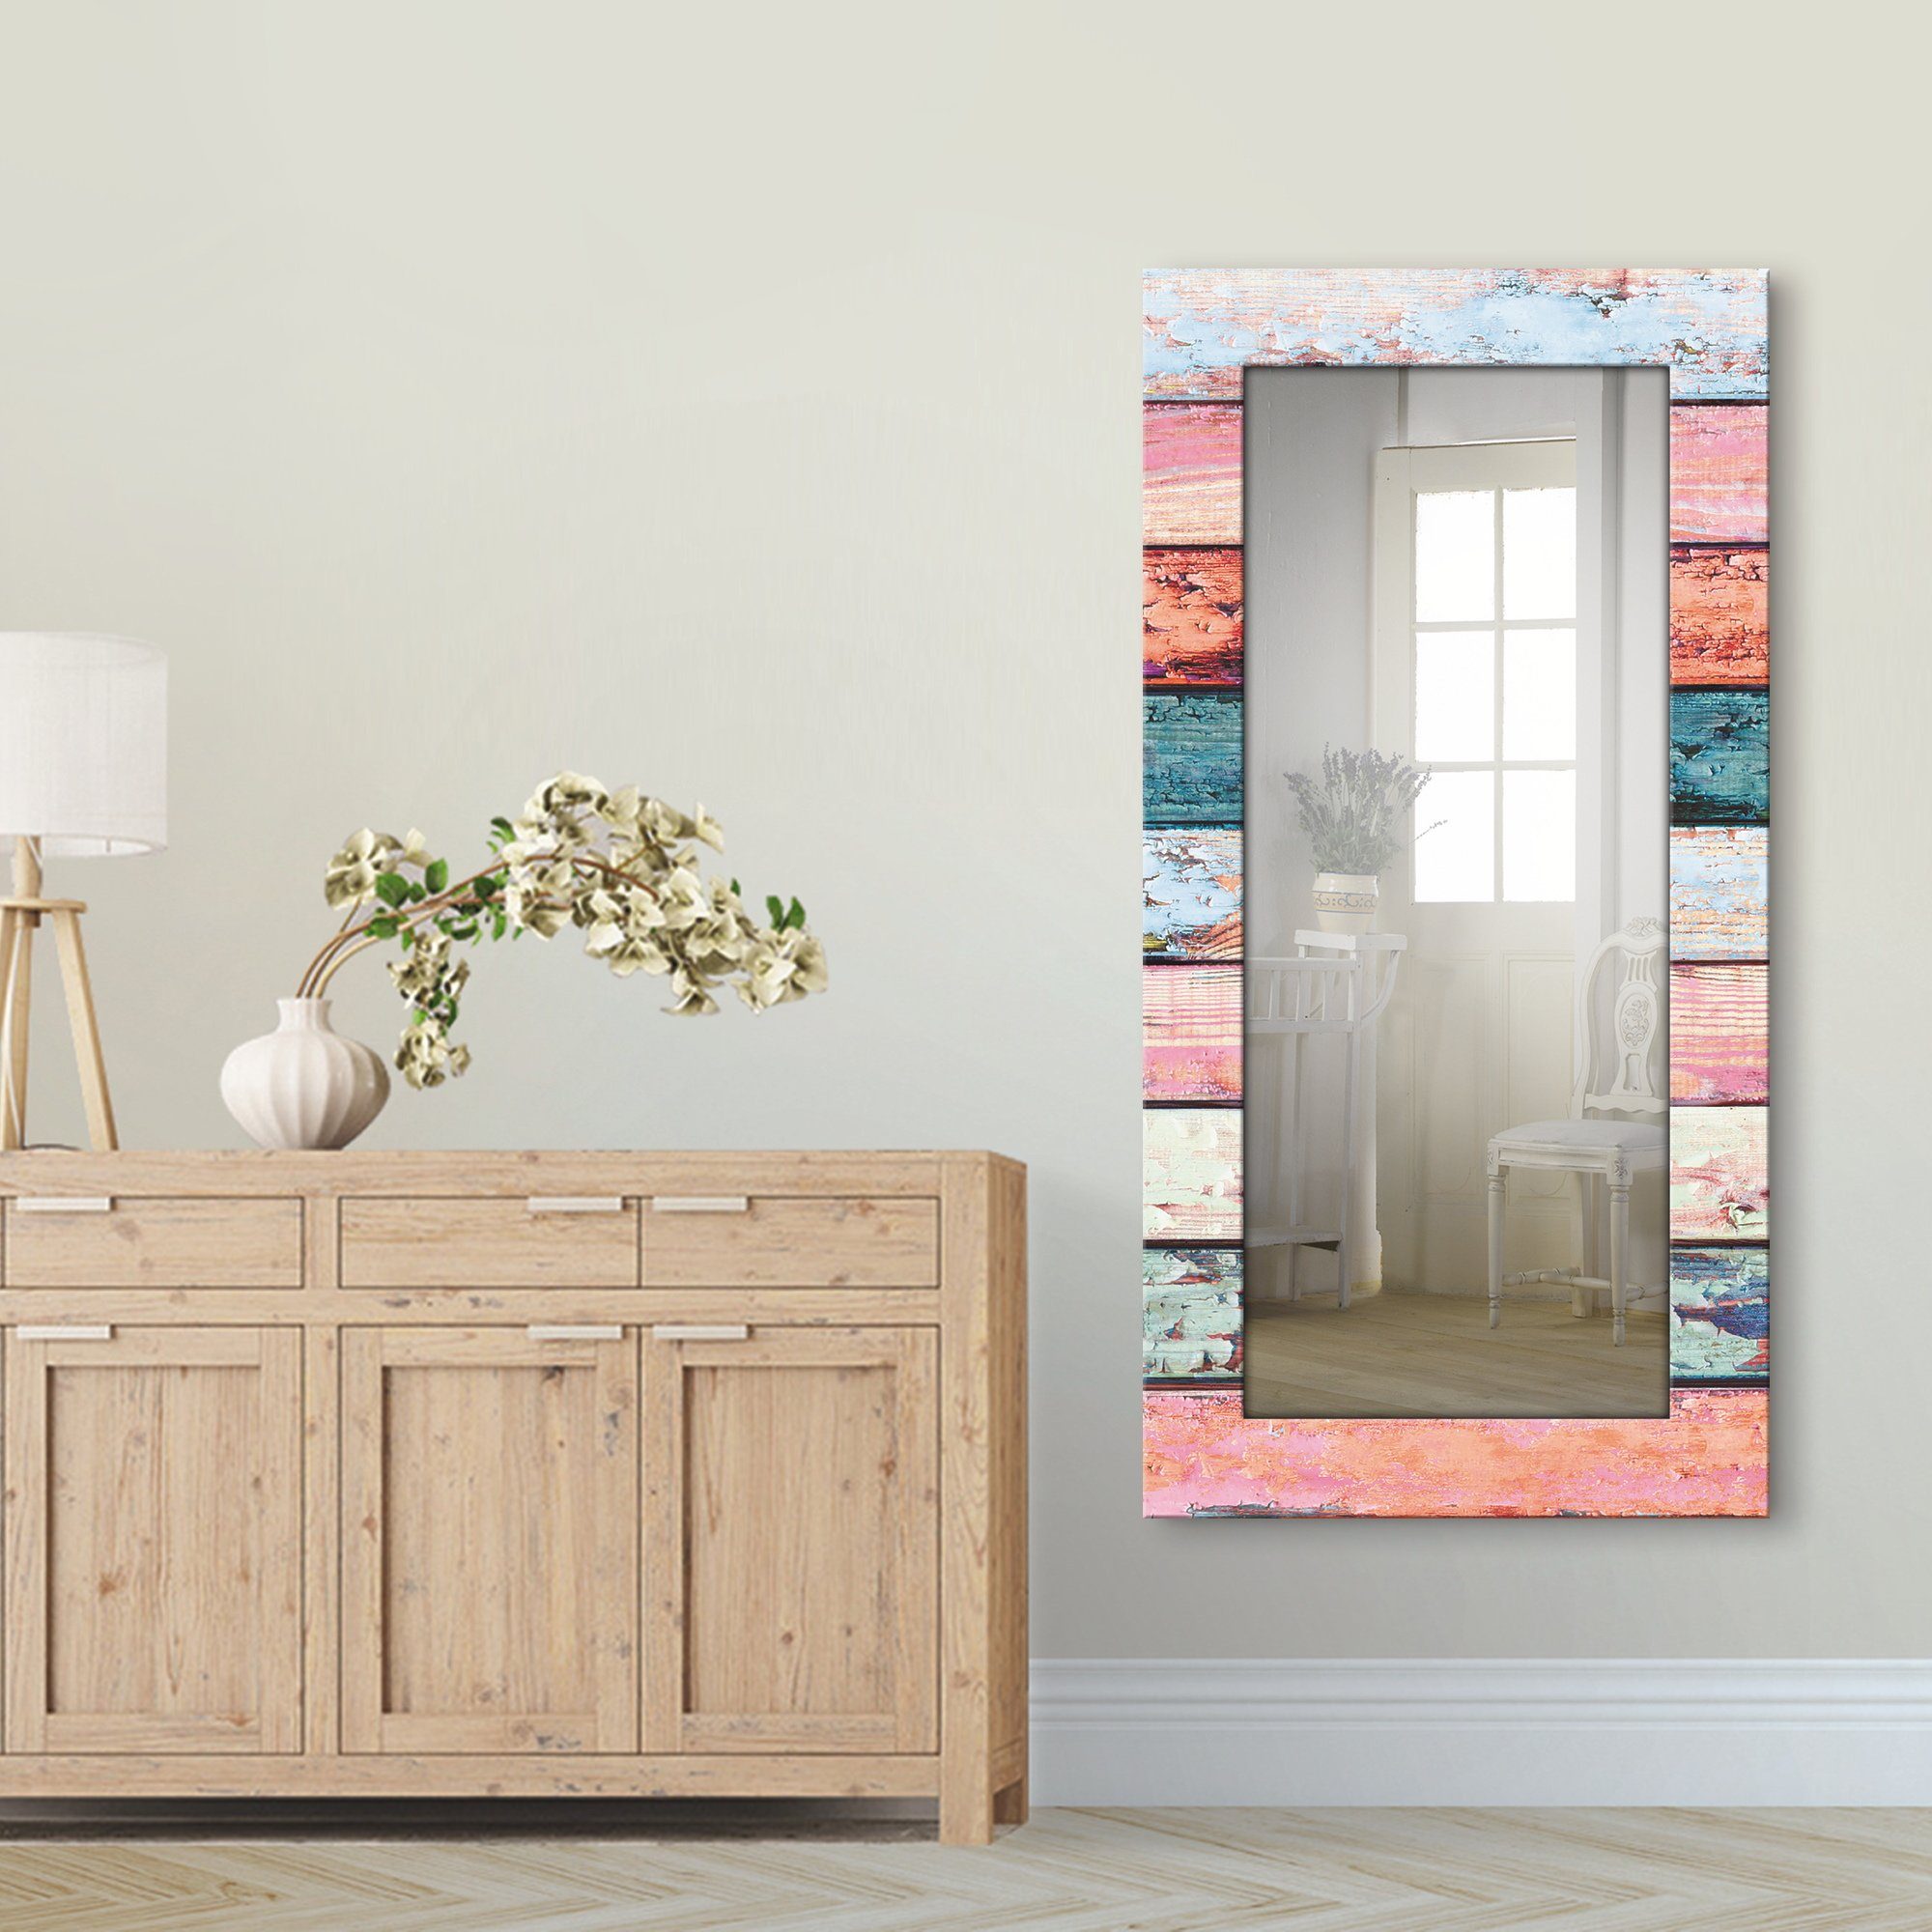 Artland Sierspiegel Veelkleurige houten planken ingelijste spiegel voor het hele lichaam met motiefrand, geschikt voor kleine, smalle hal, halspiegel, mirror spiegel omrand om op t